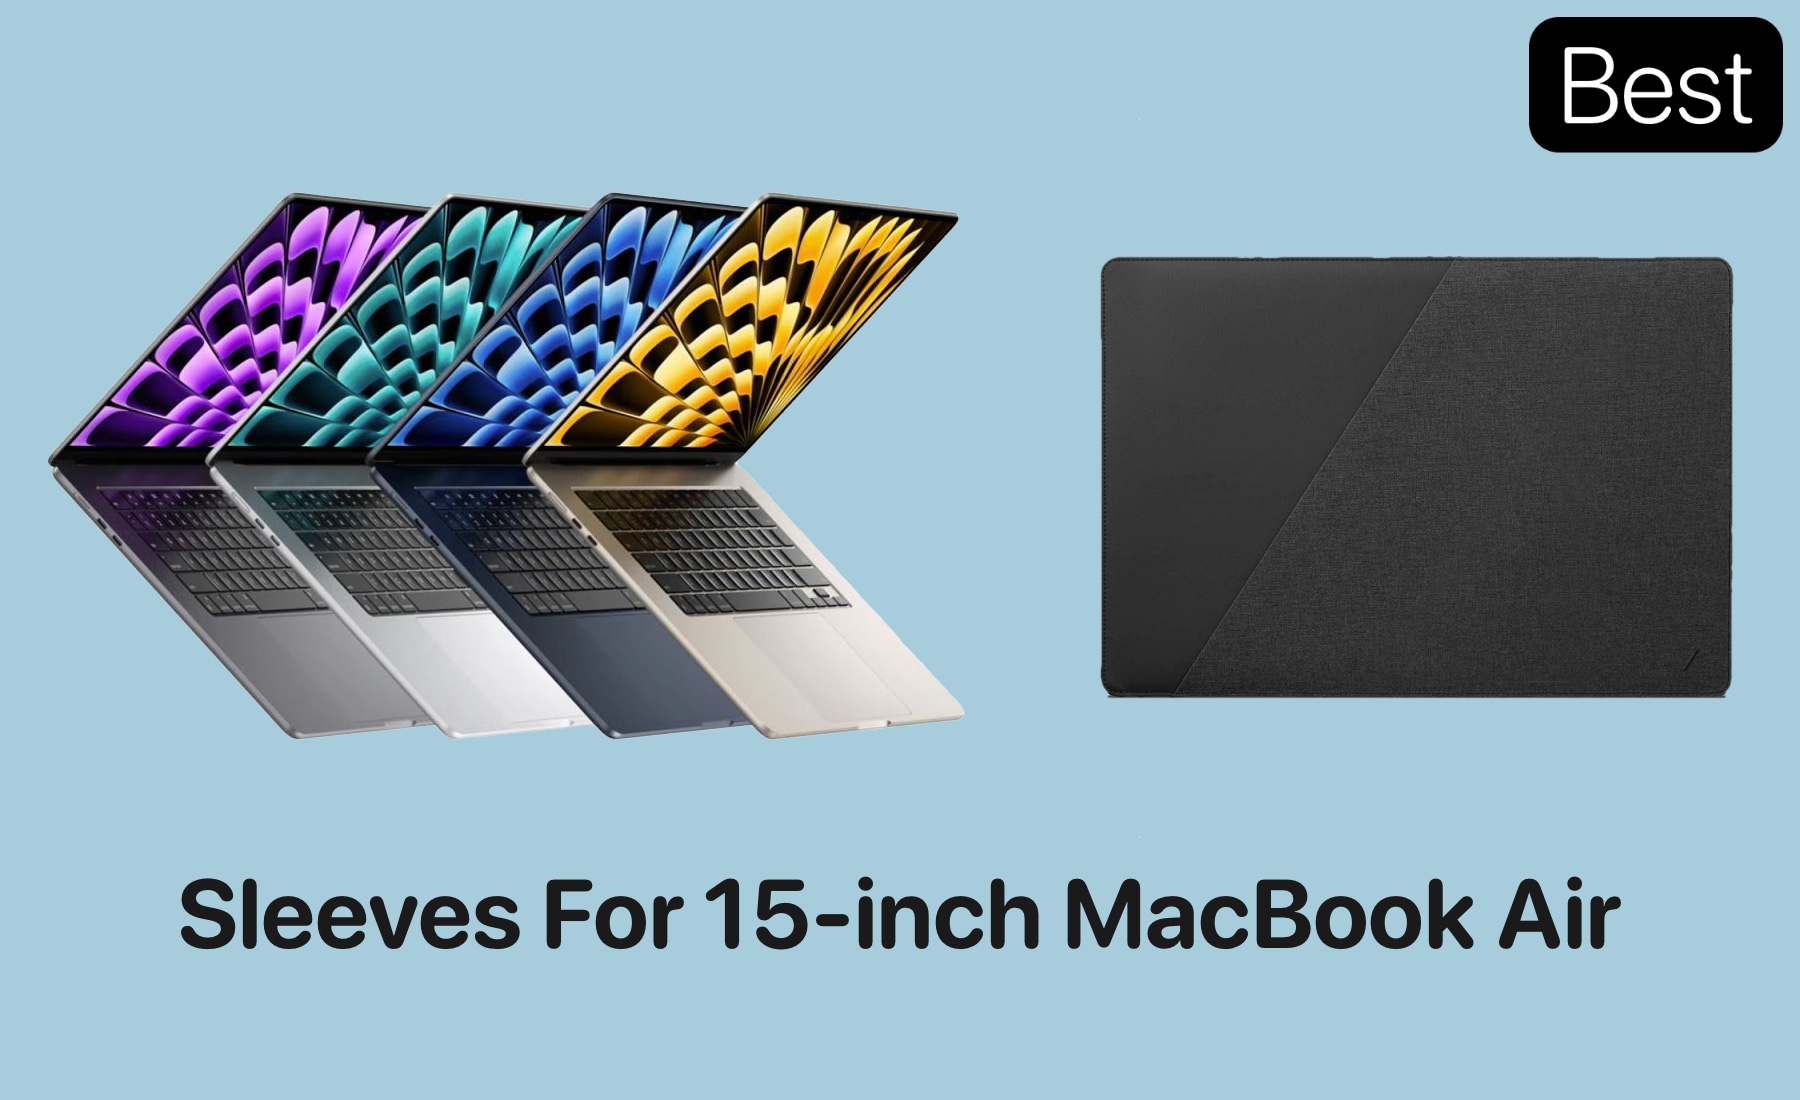 Best sleeves for MacBook Air in 2023